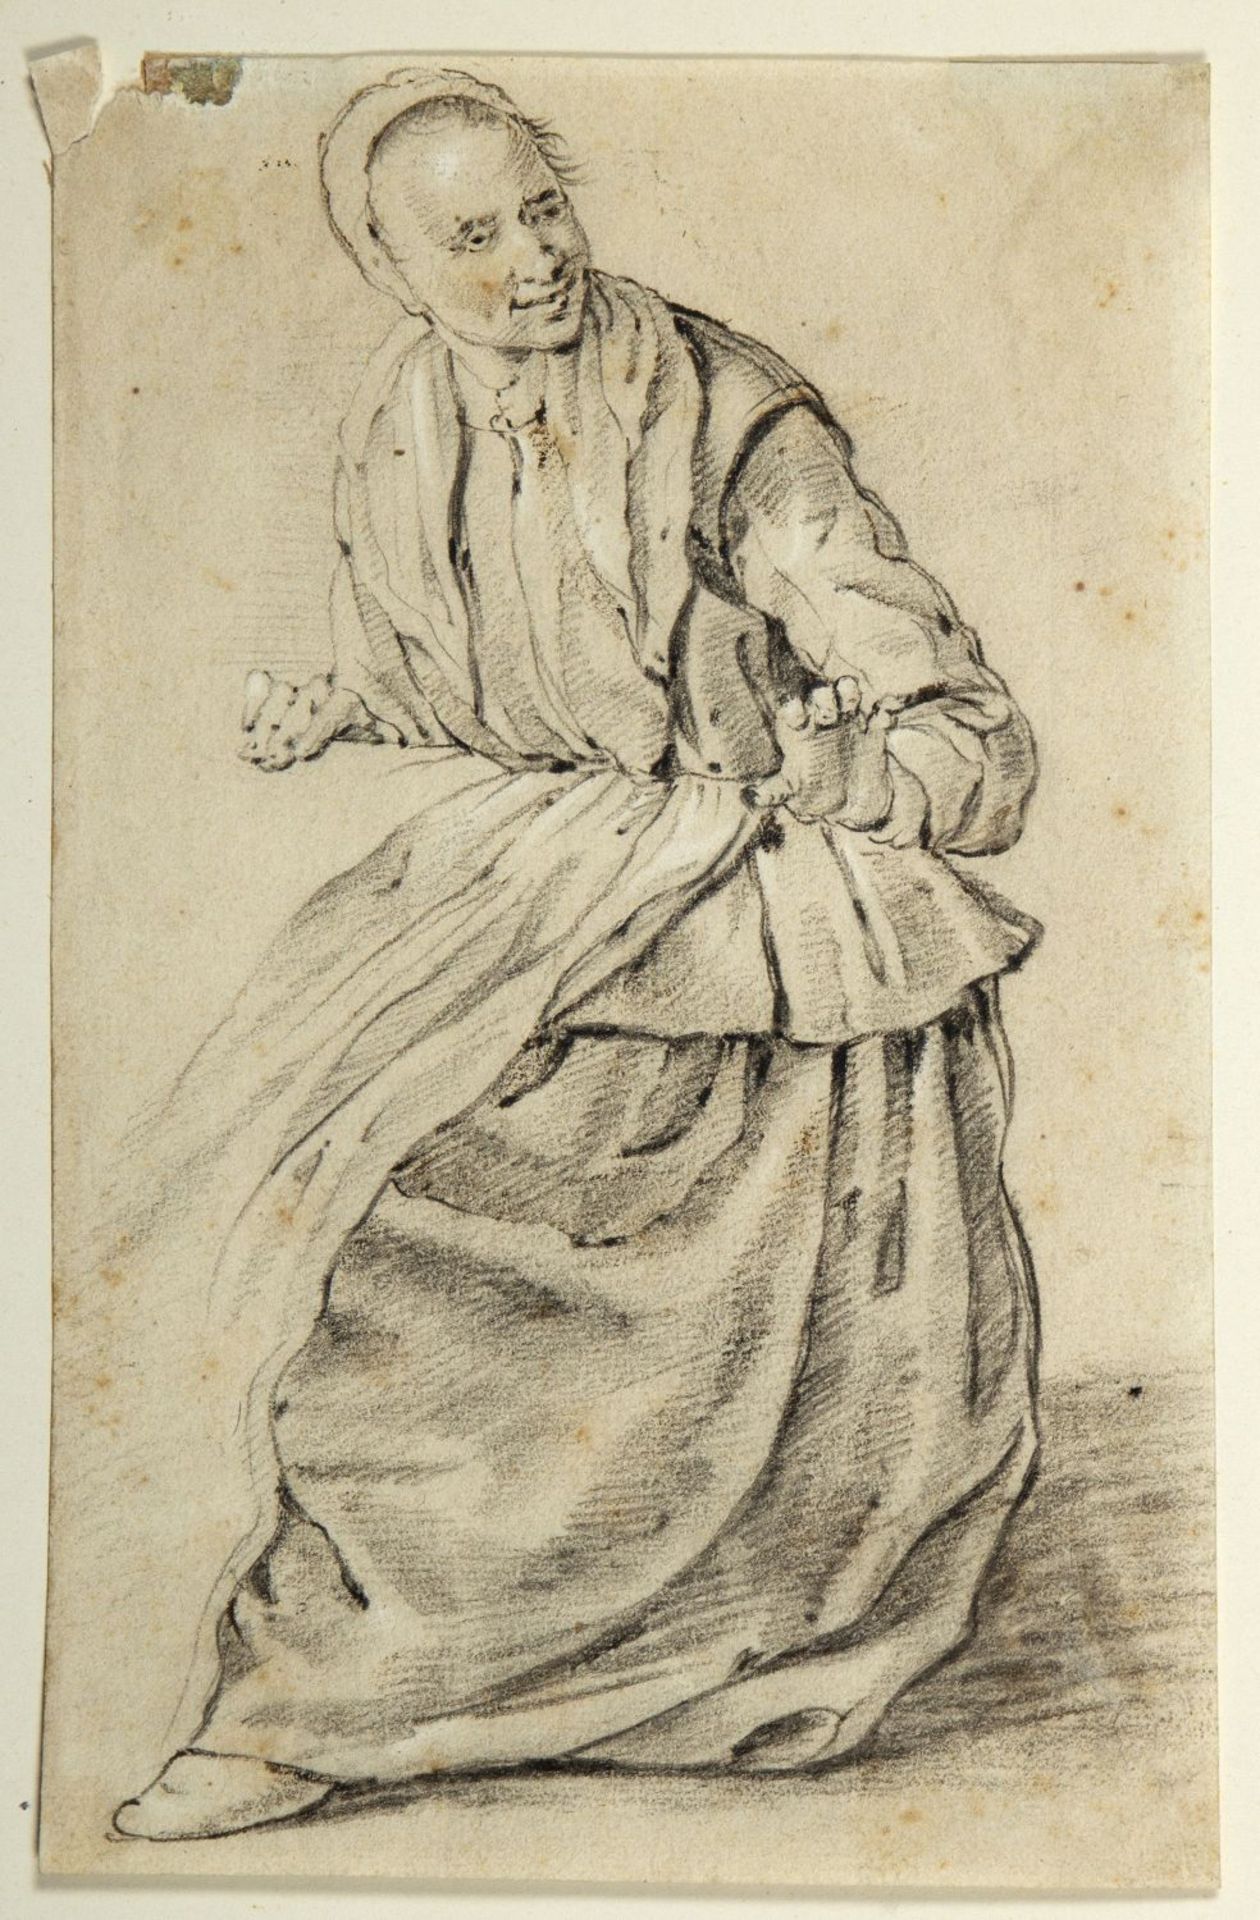 Saftleven, Cornelis. 1607 - 1681. Zugeschrieben